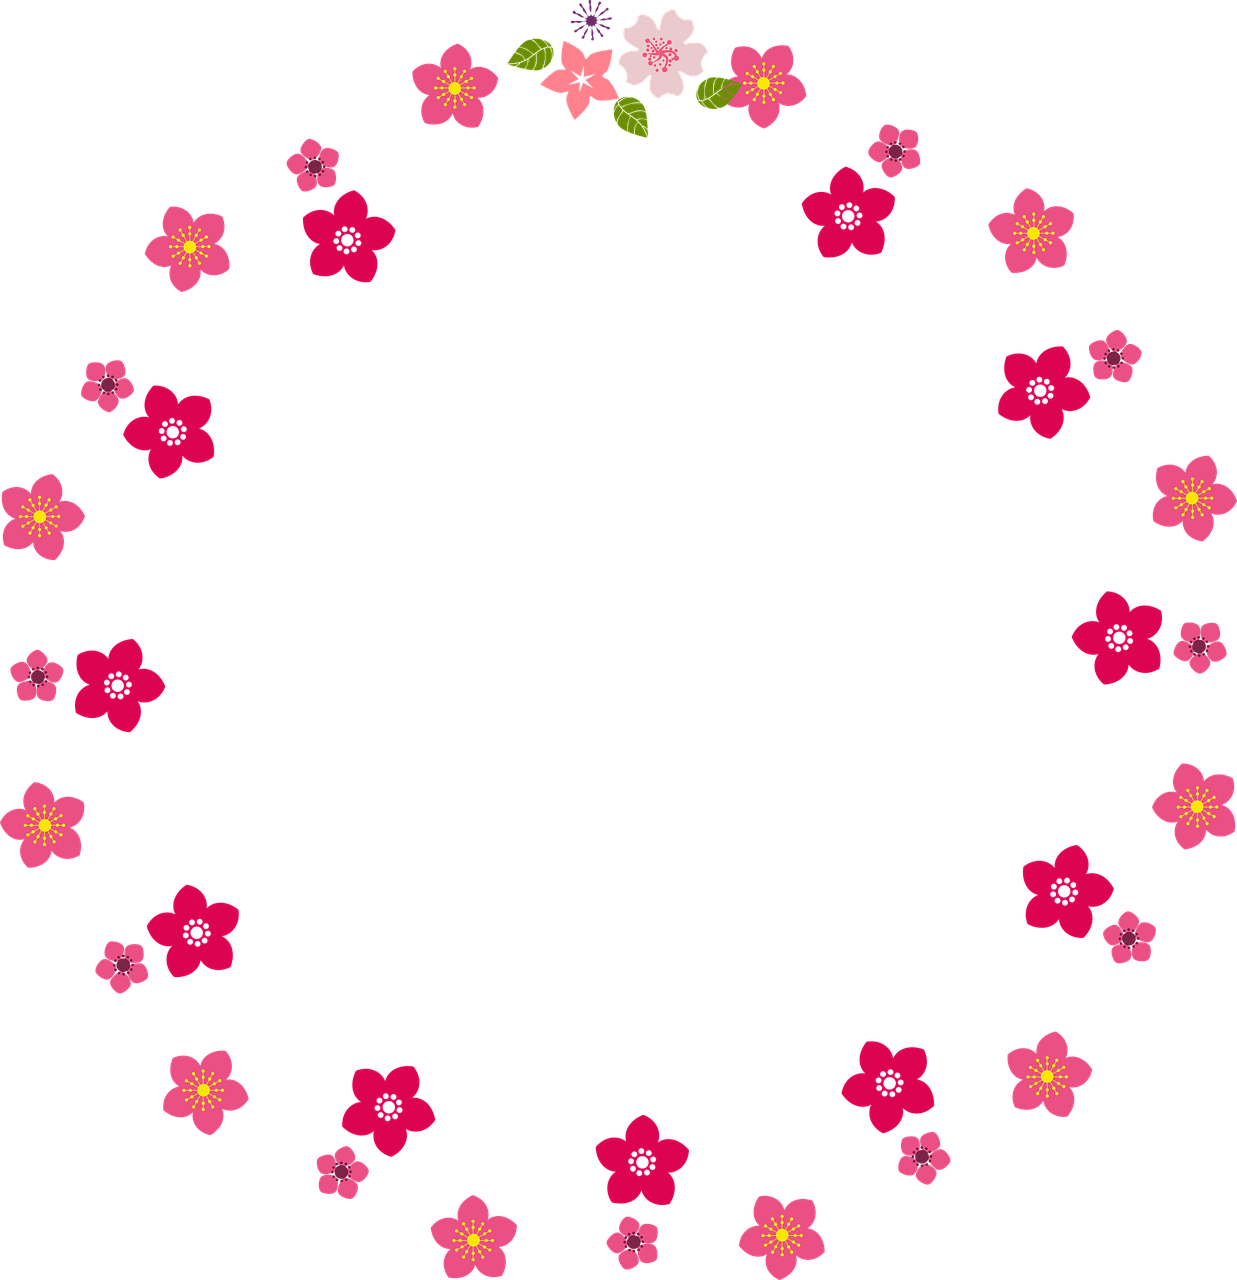 Immagine del bordo del bordo floreale del bordo del cerchio